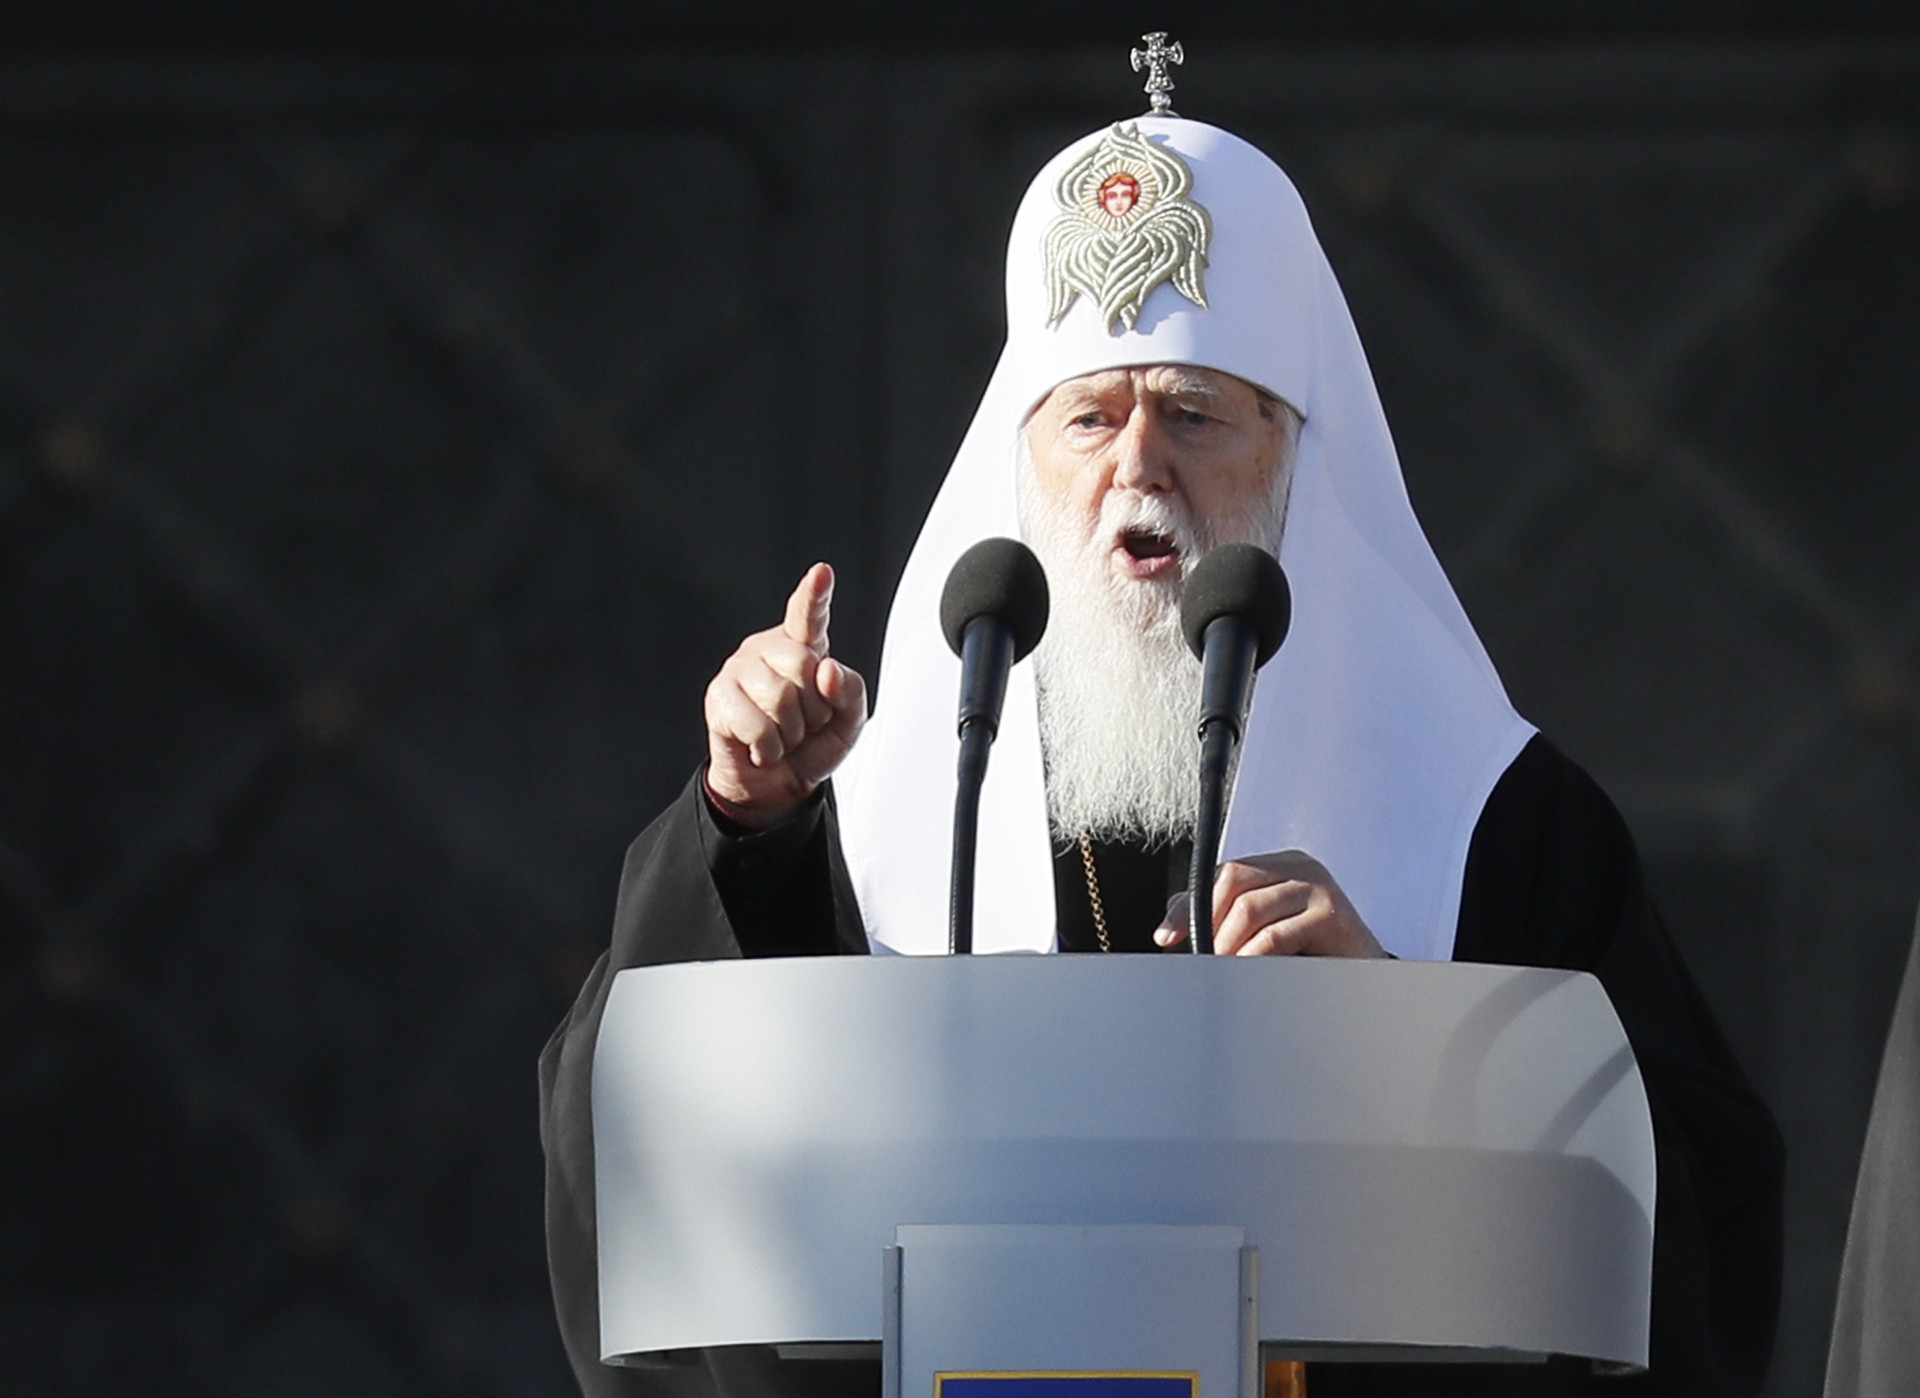 «Раскольнические тенденции»: почему объединение украинской церкви до сих пор не завершено